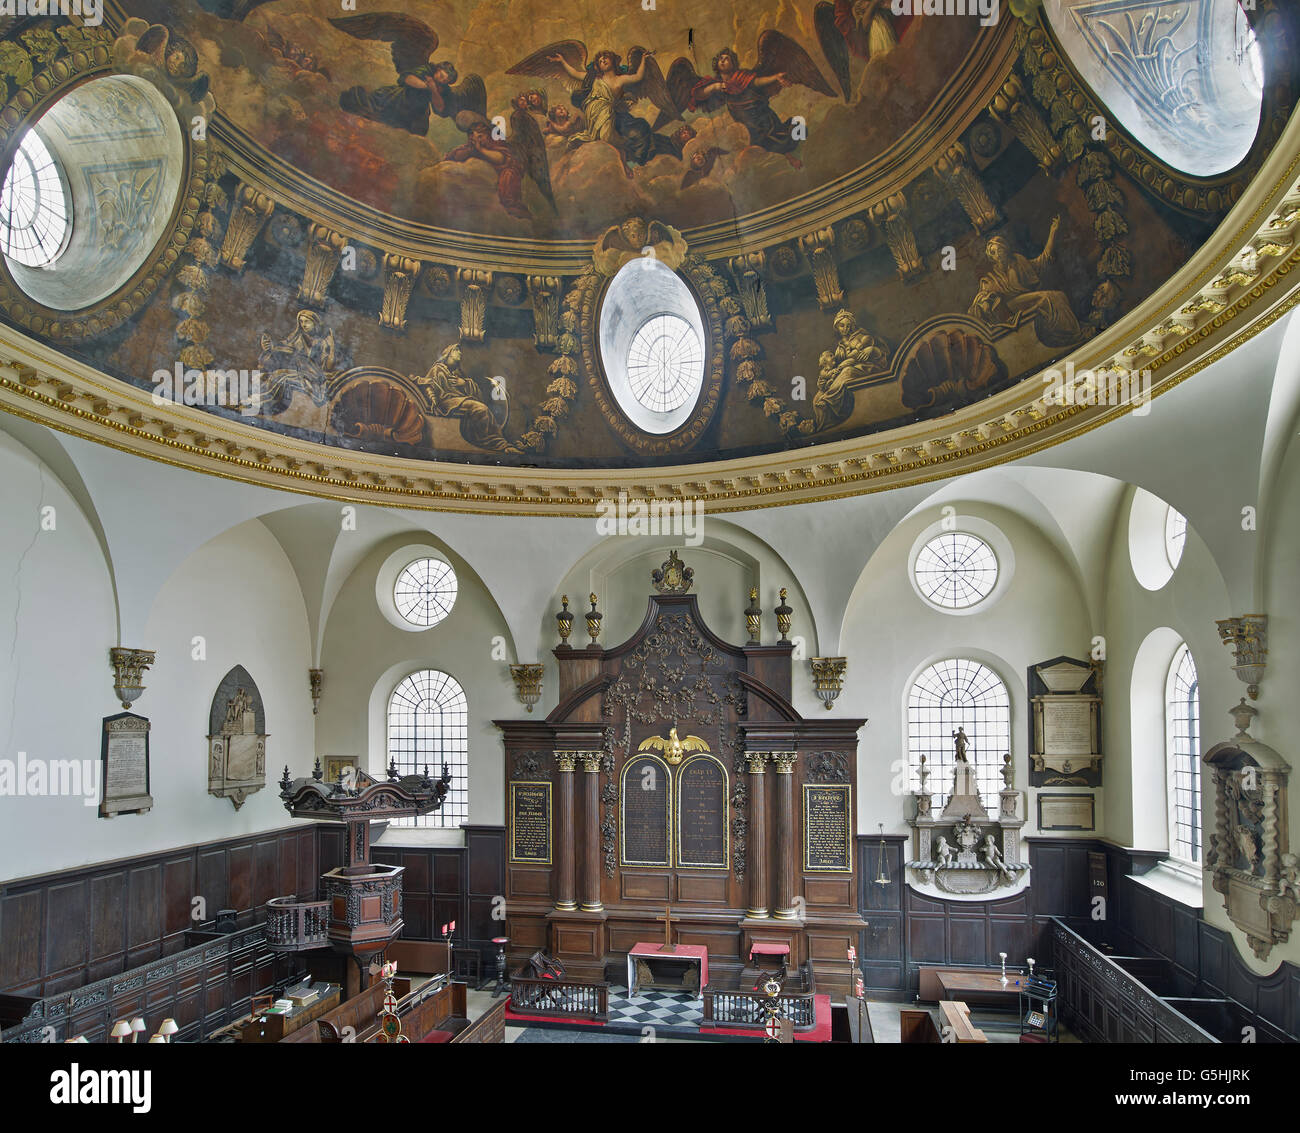 St Mary Abchurch, chiesa della città di Londra, interno con cupola Foto Stock